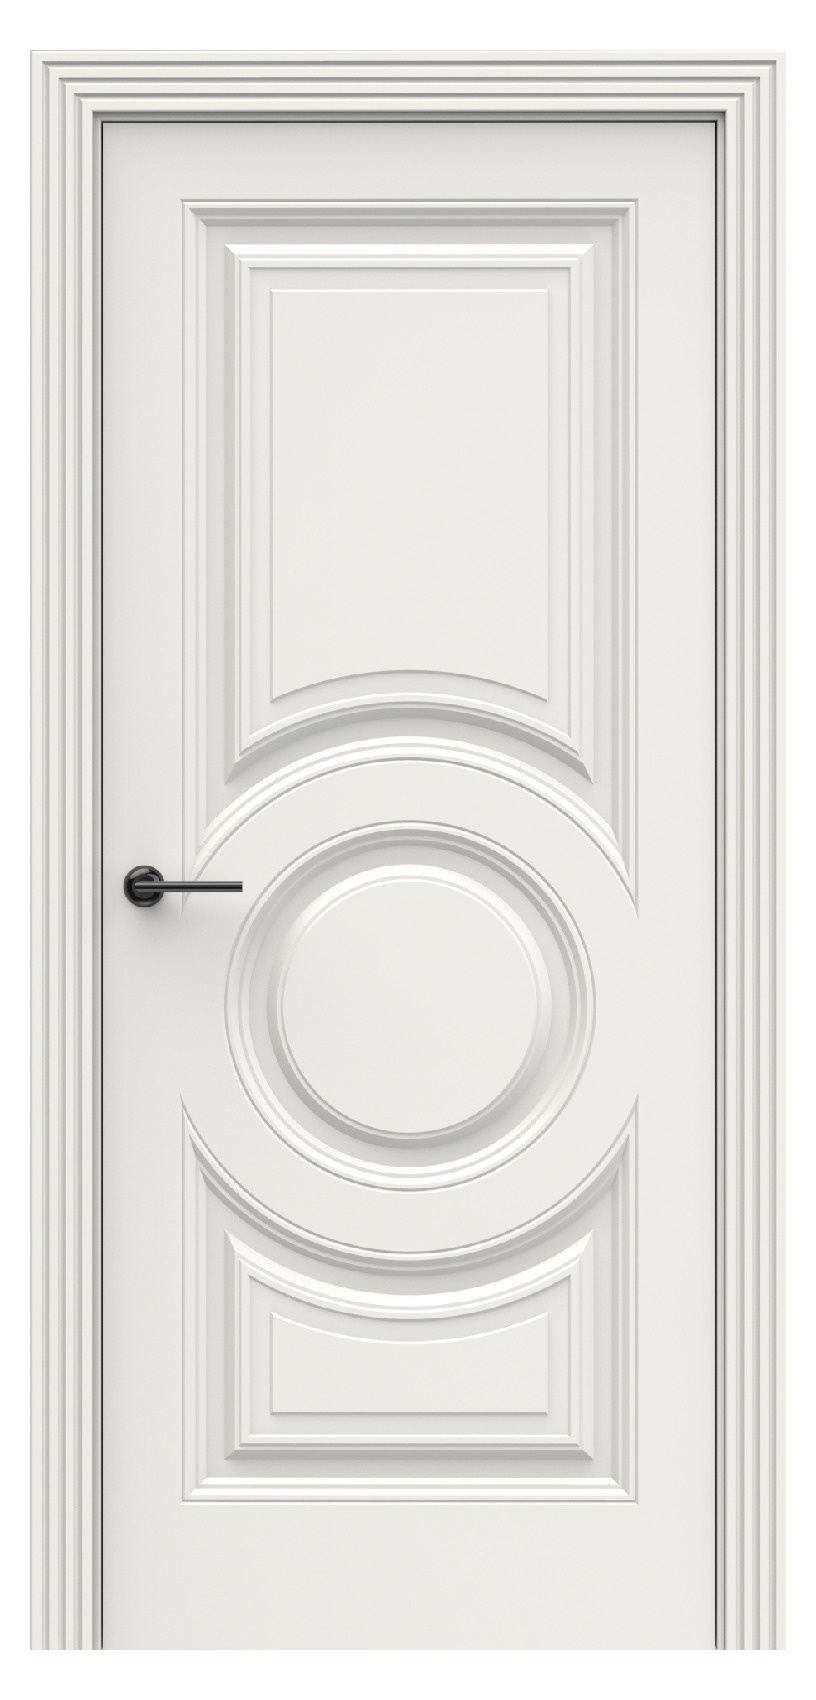 Questdoors Межкомнатная дверь QBR22, арт. 17935 - фото №1